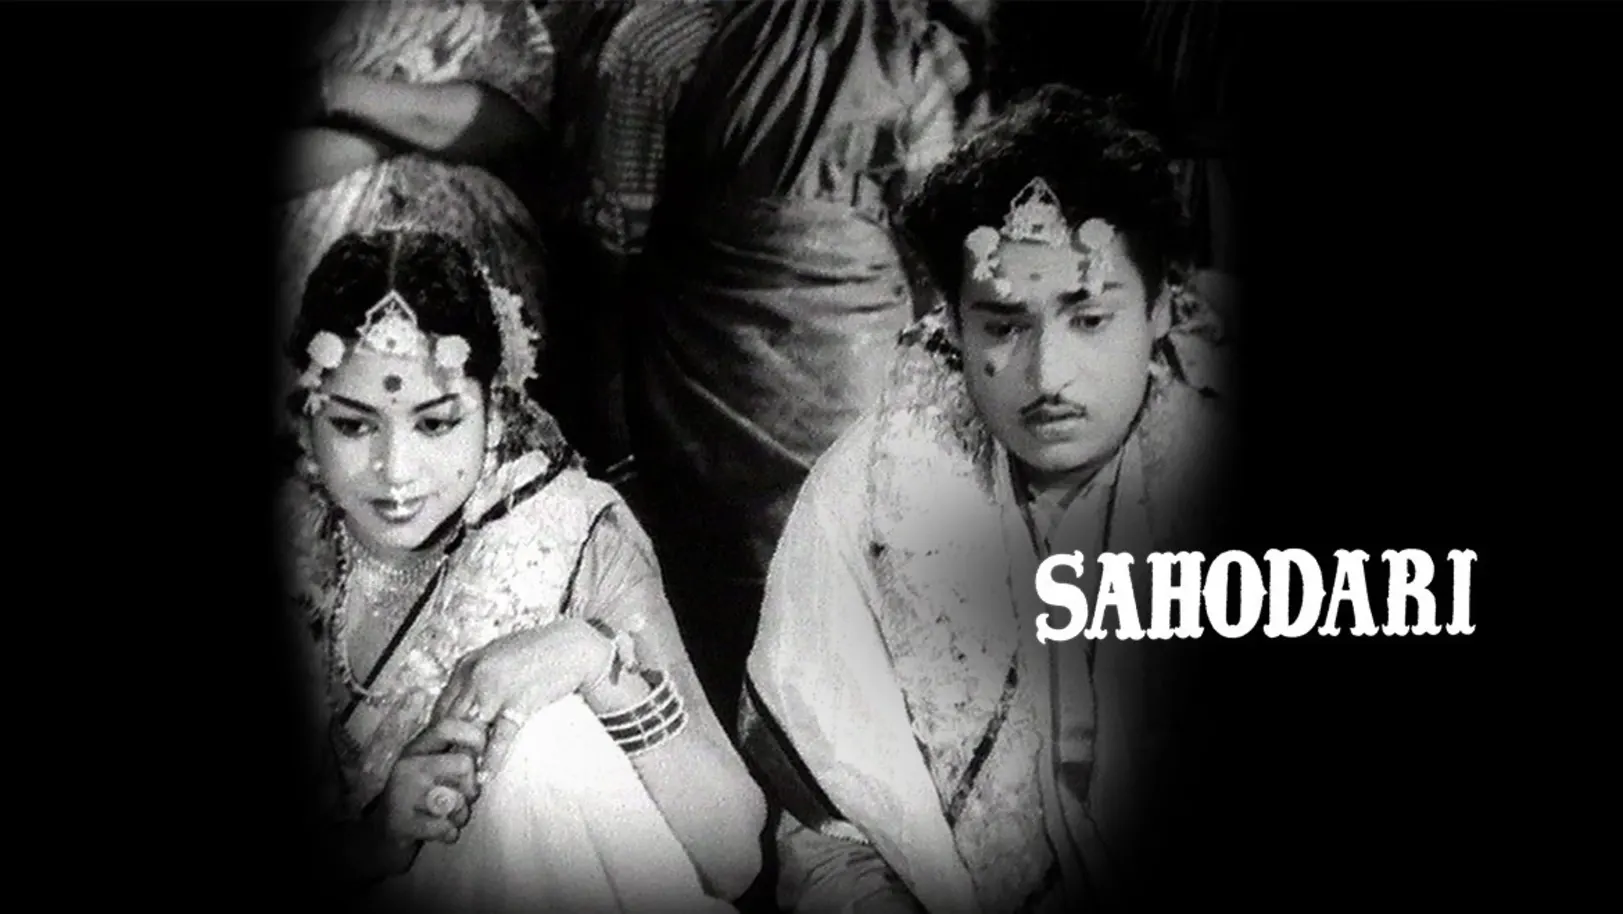 Sahodhari Movie